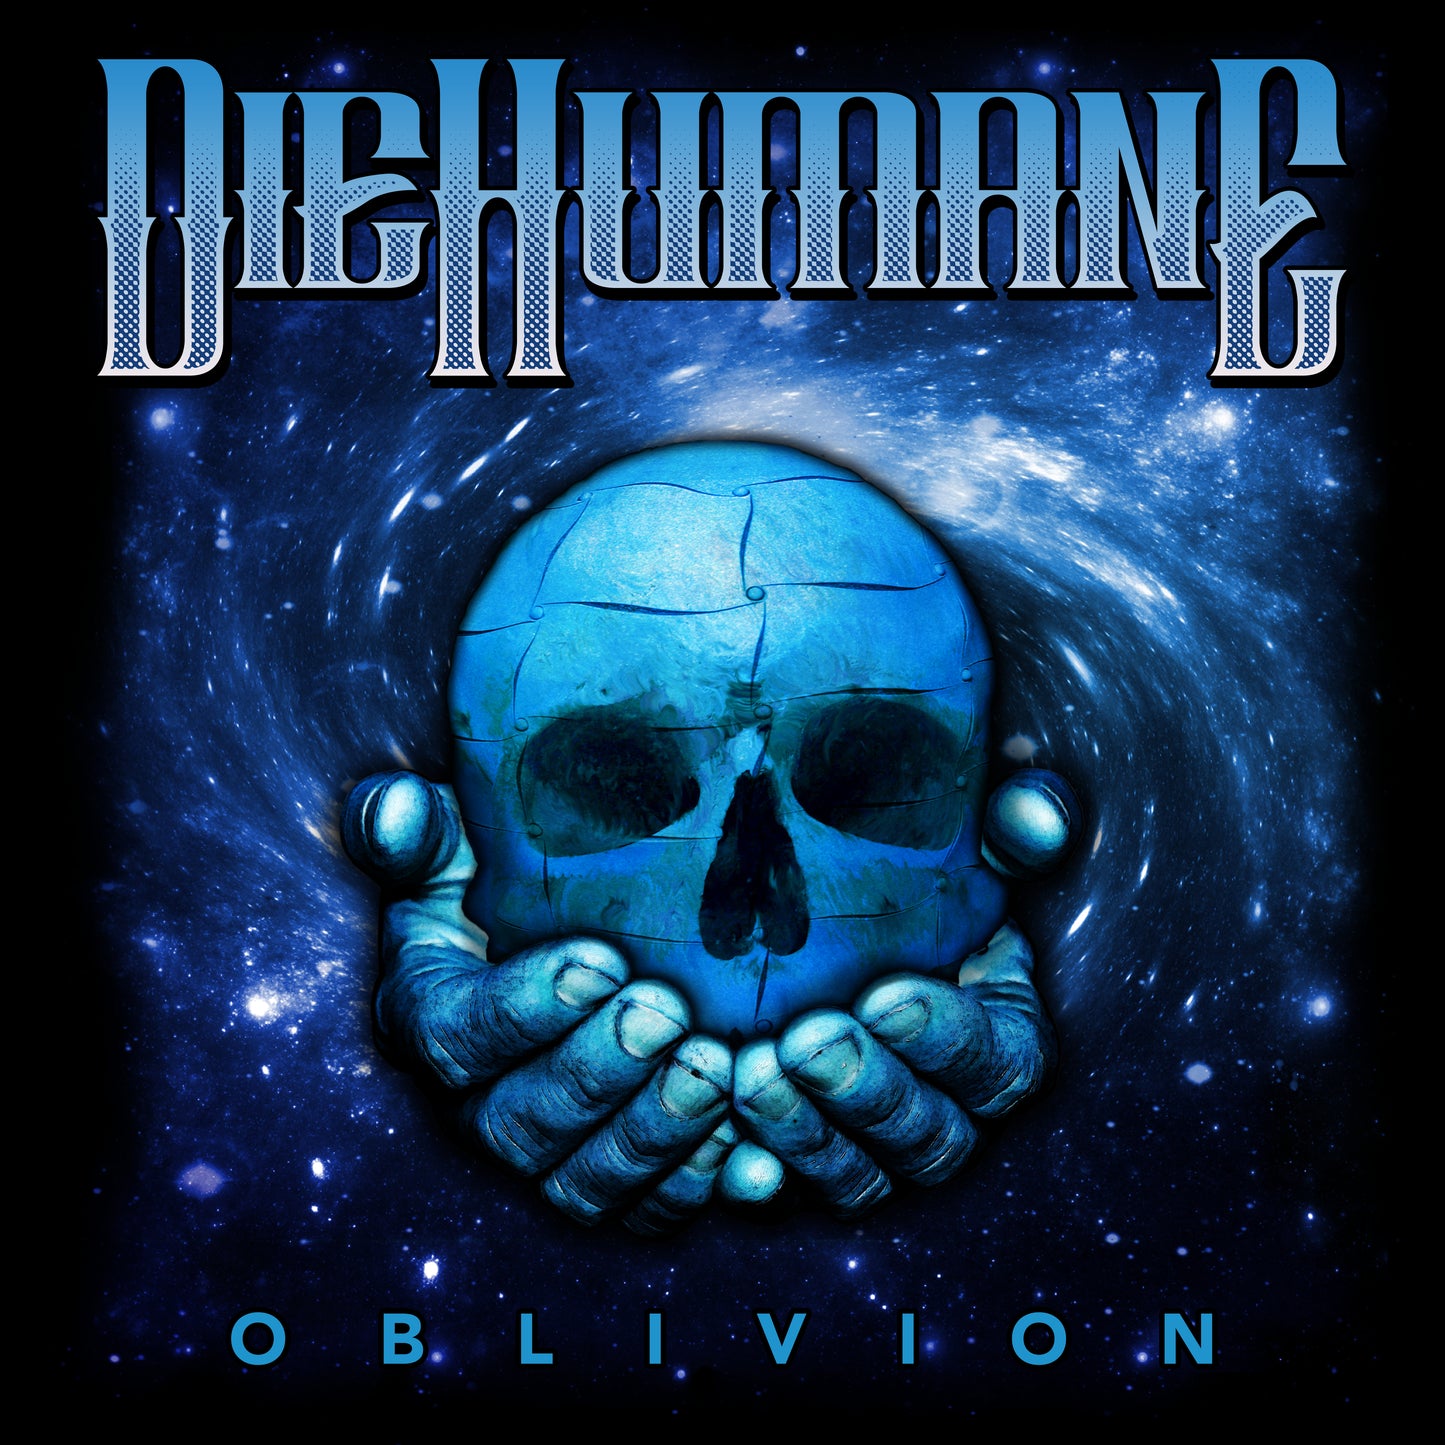 DieHumane - Oblivion - Unisex Shirt